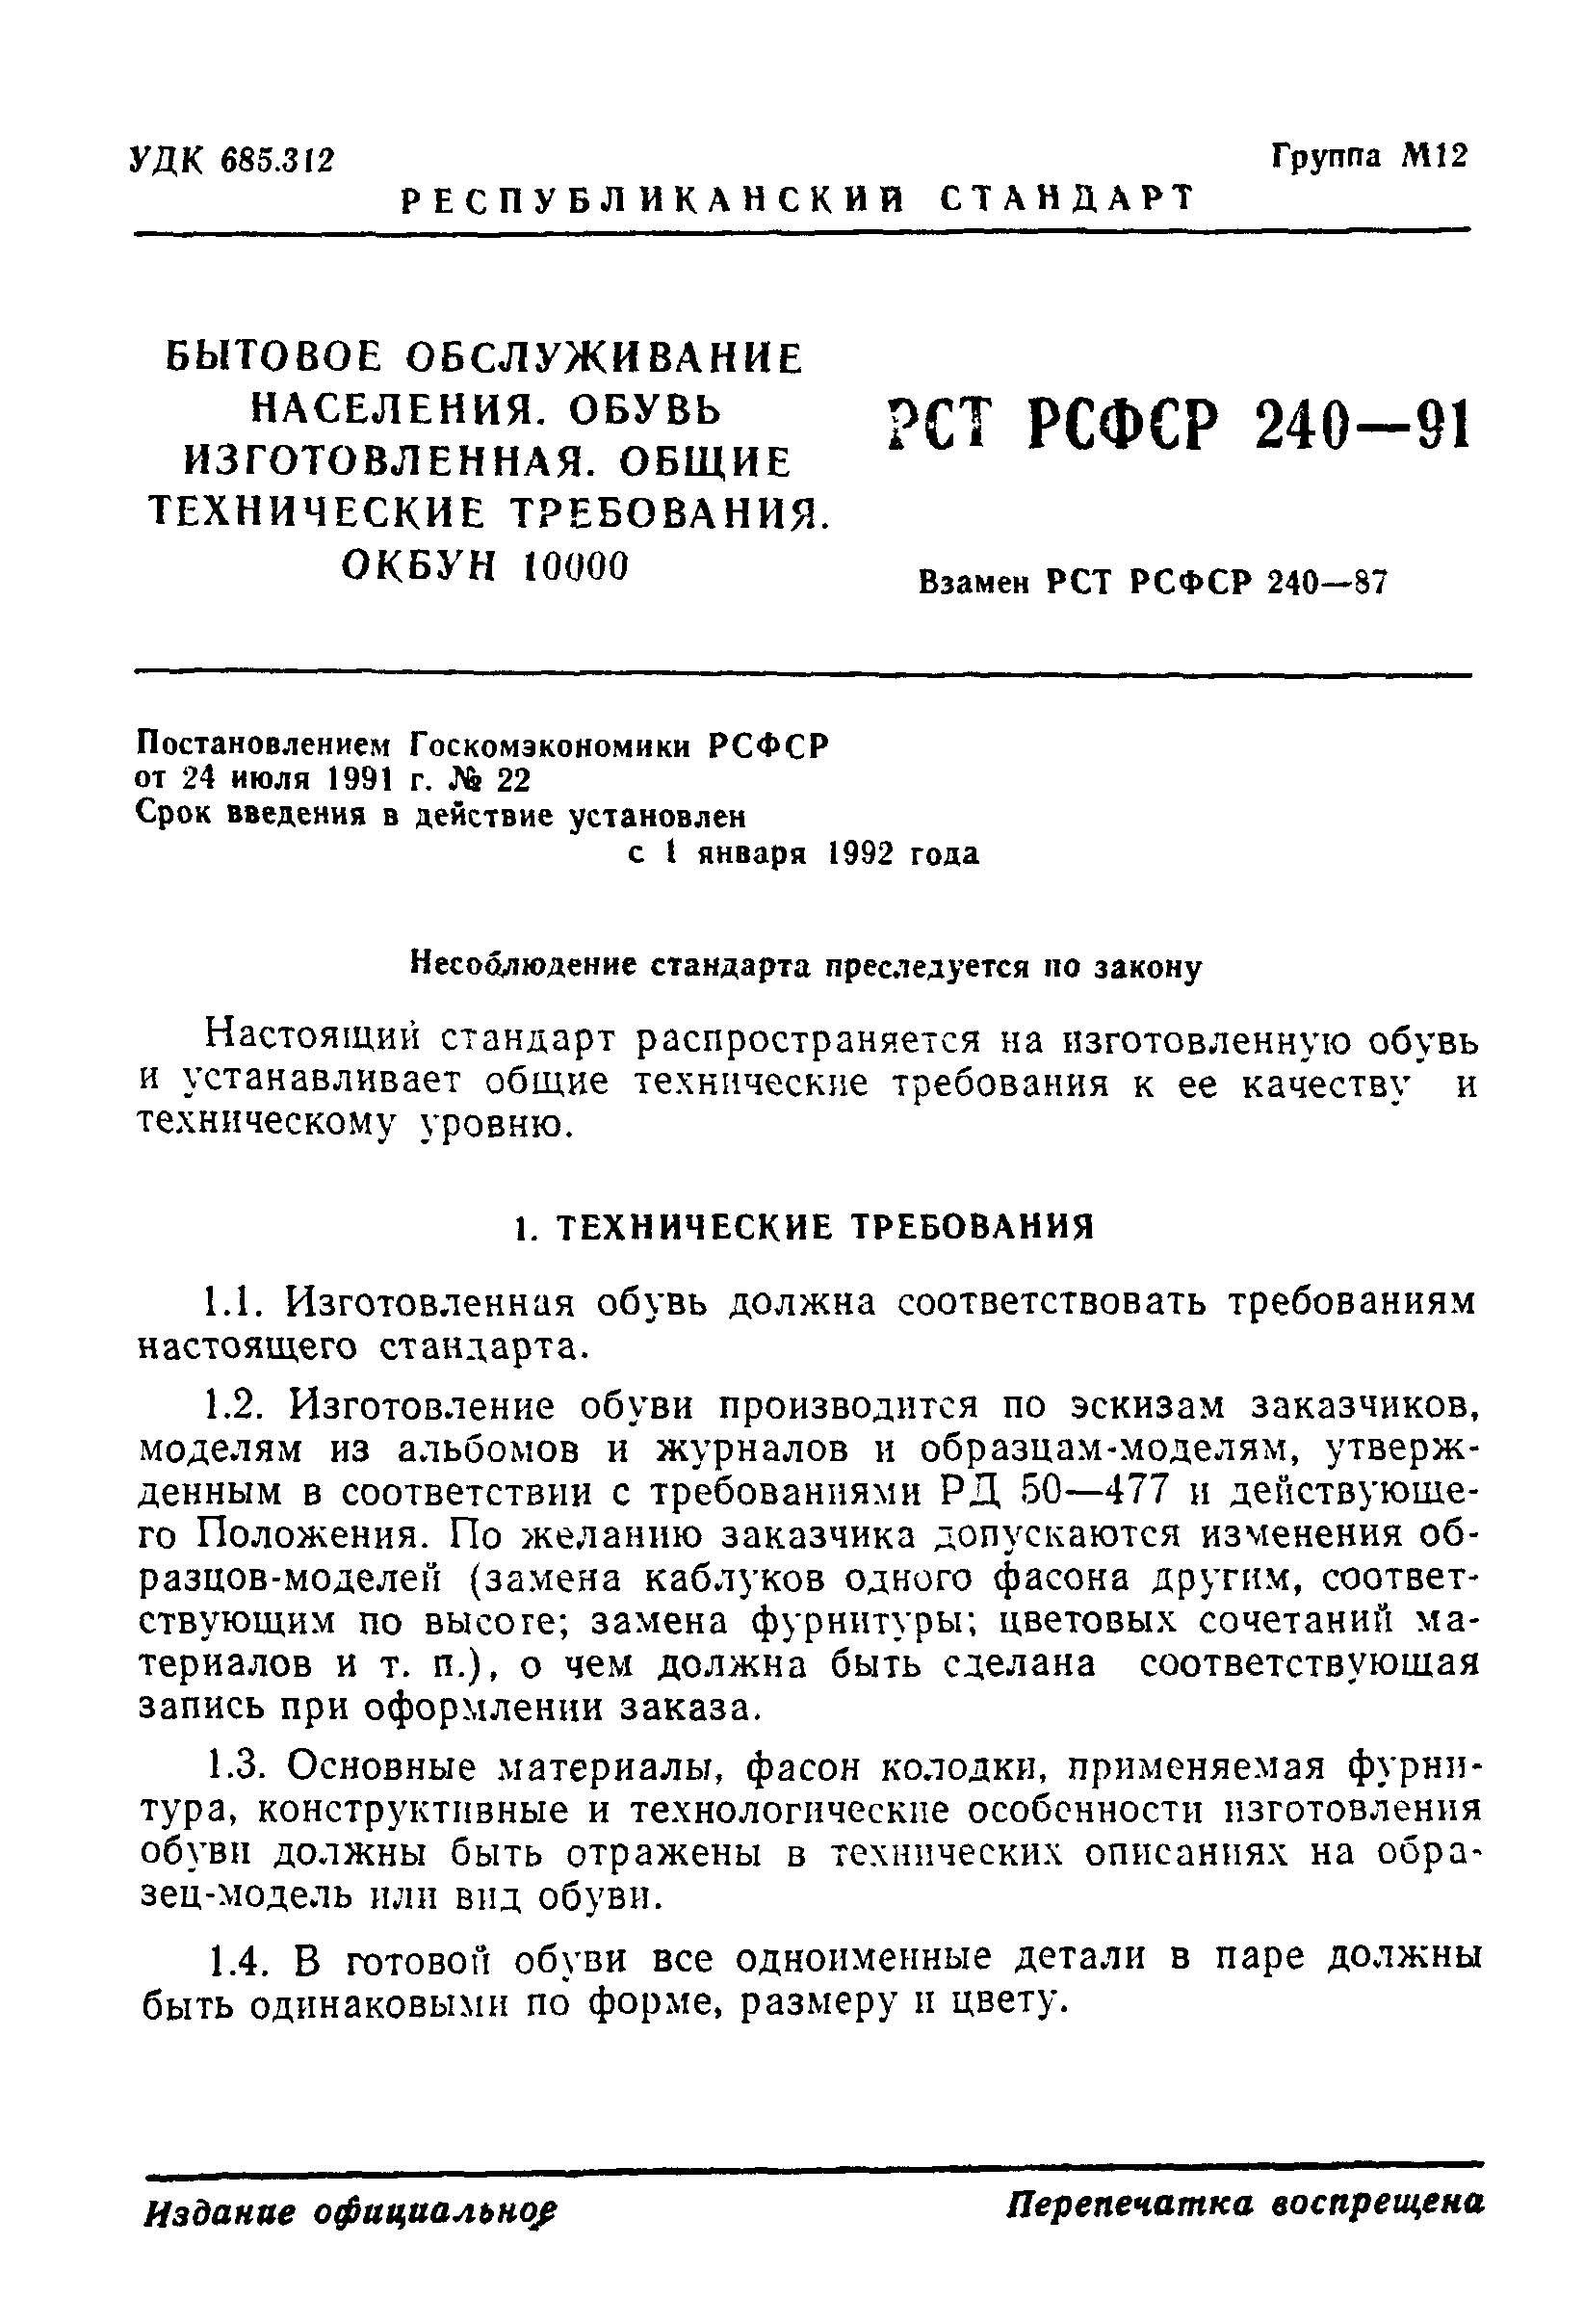 РСТ РСФСР 240-91